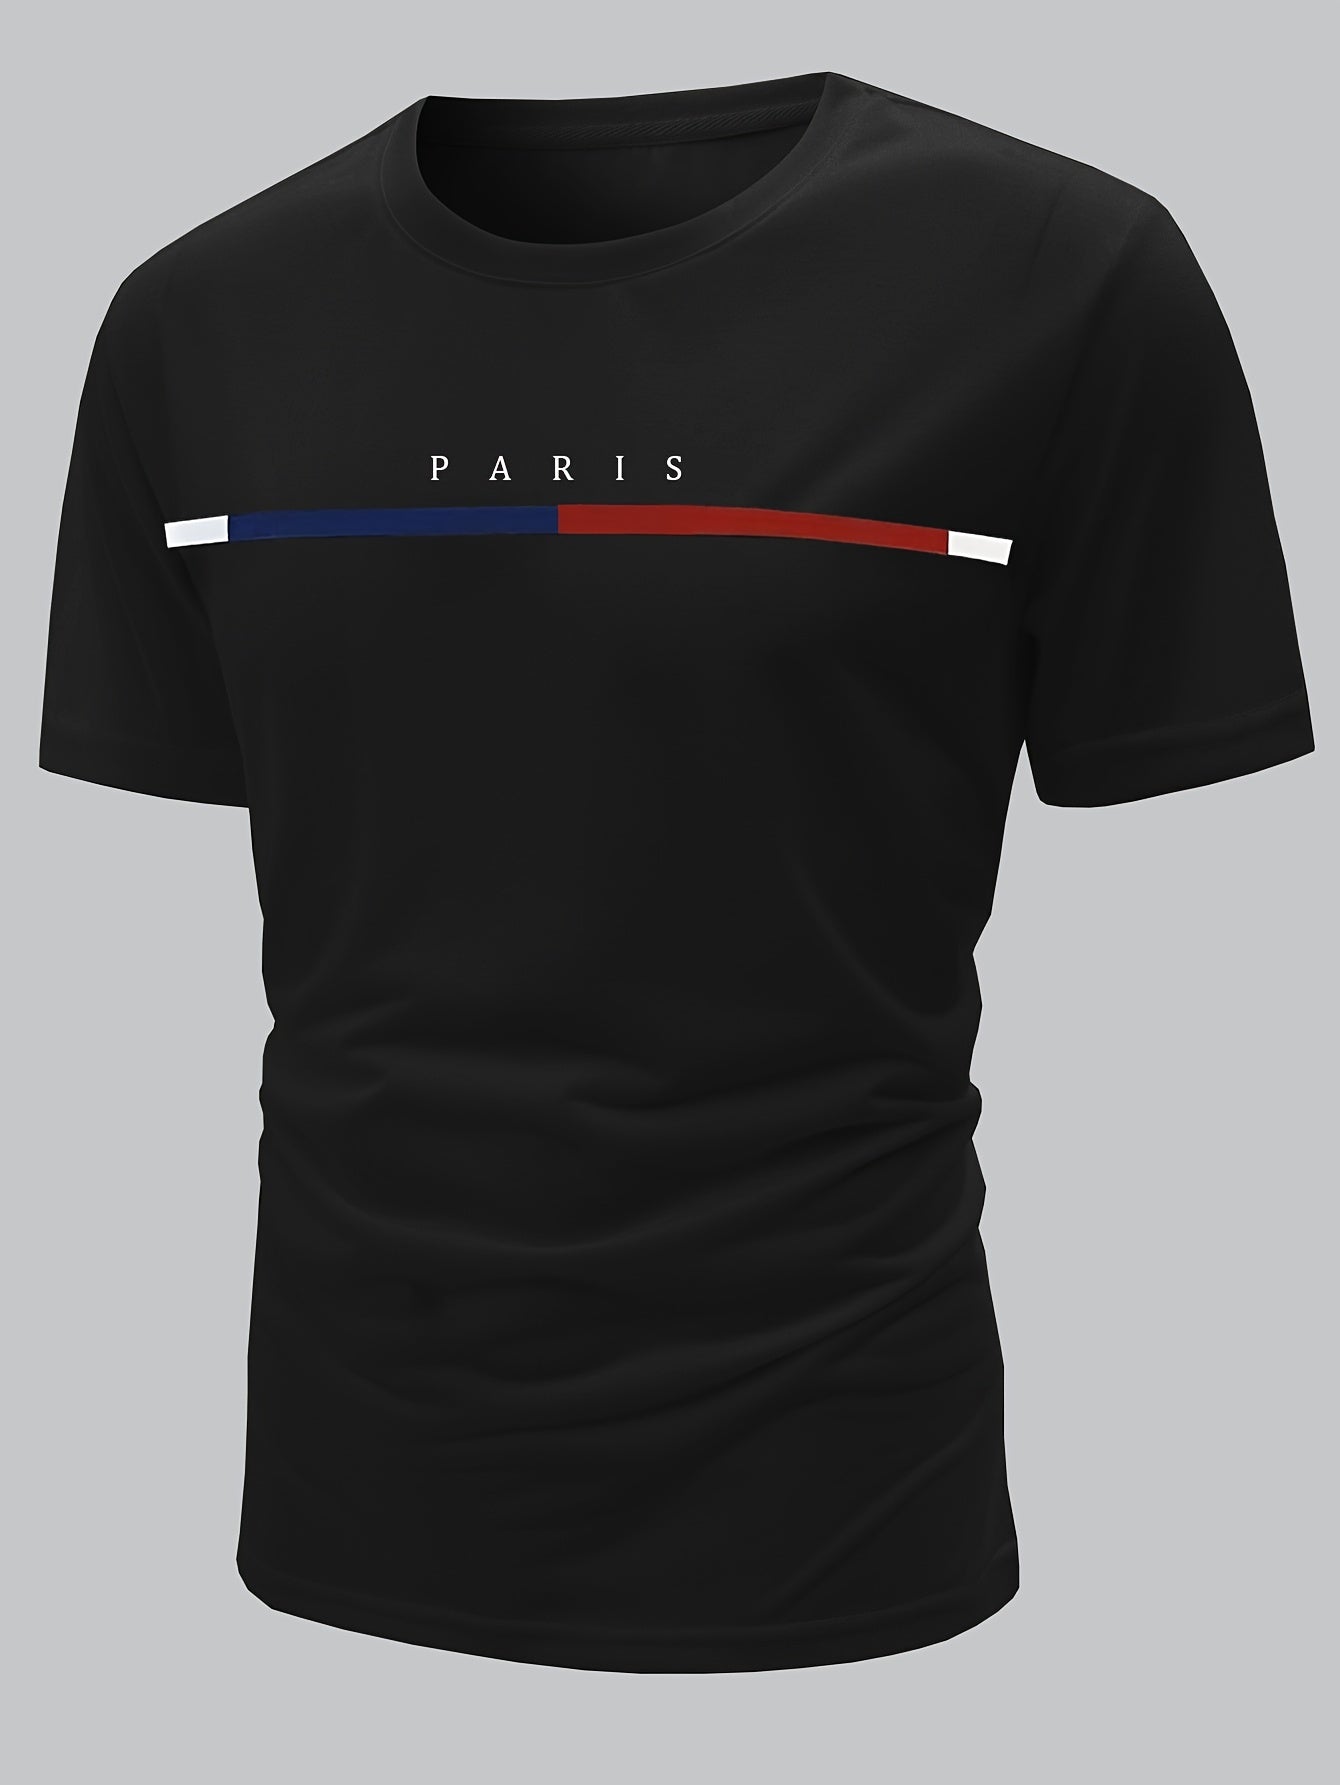 Paris Theme Pattern Print Men's Comfy T-shirt, Graphic Tee Men's Summer Clothes, Men's Outfits